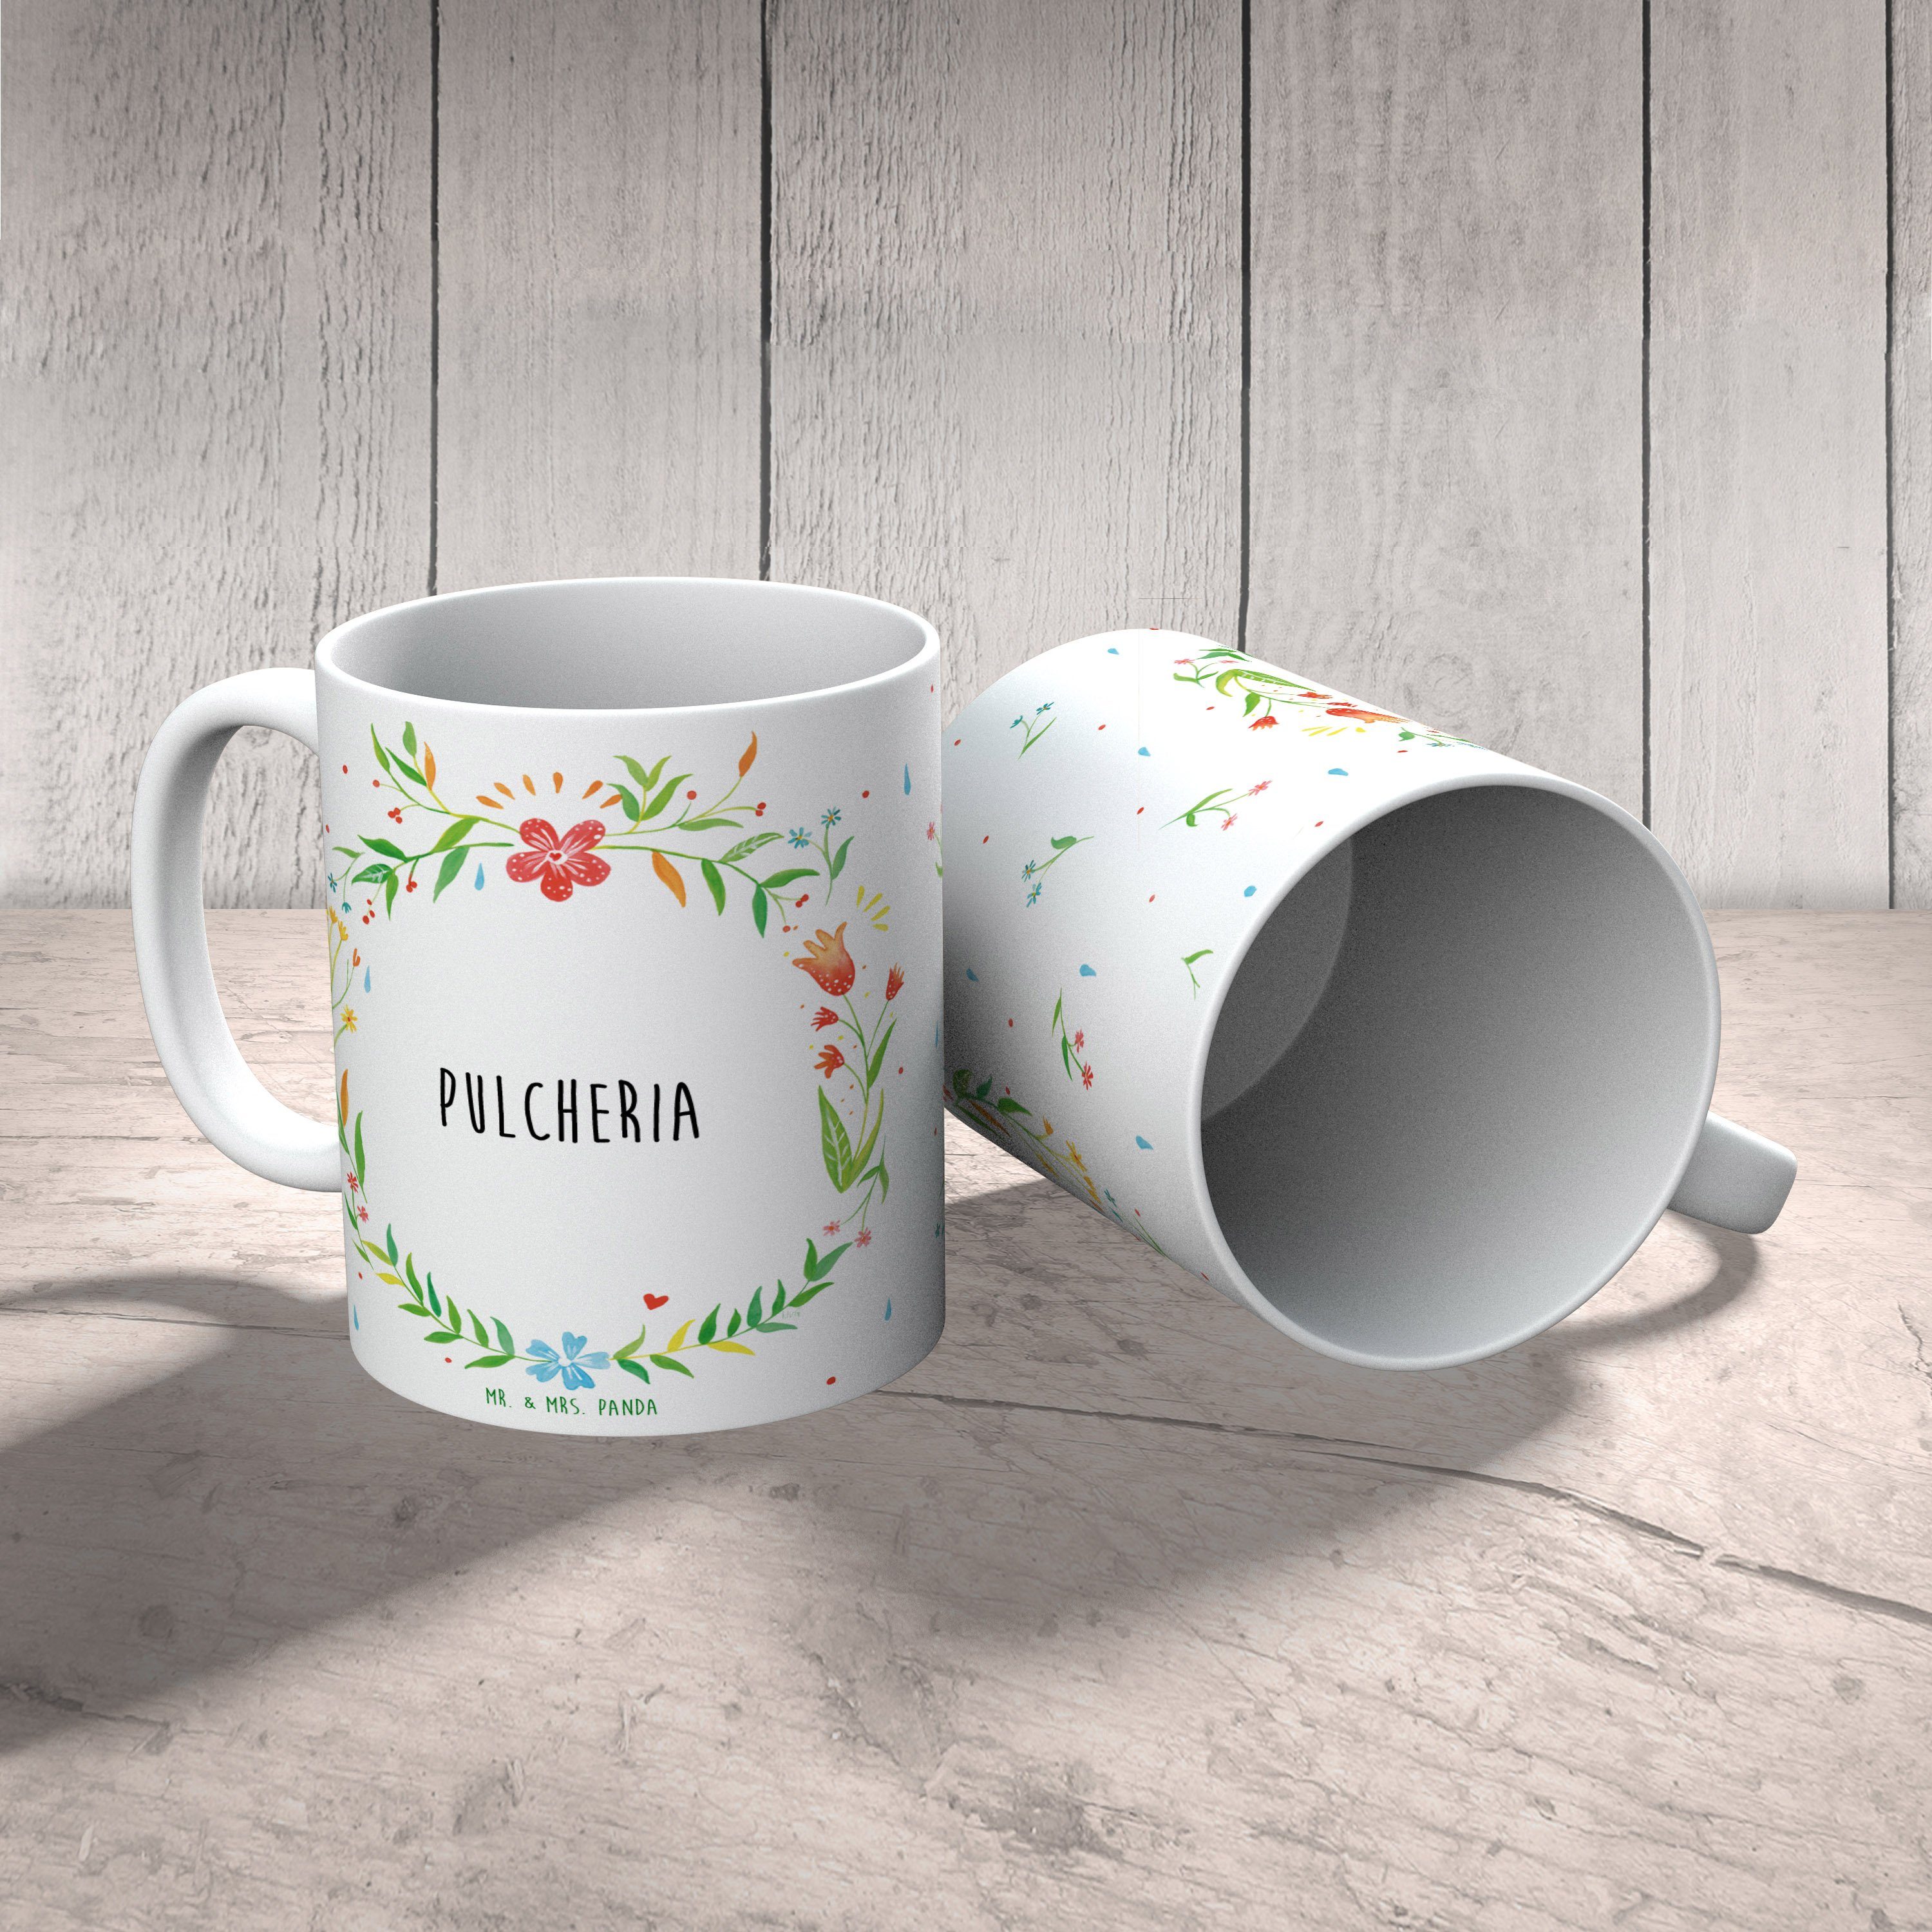 Mrs. Panda Mr. Pulcheria Tasse Geschenk, & Sprüche, Keramik - Kaffeebecher, Tasse Keramiktasse, Tass,